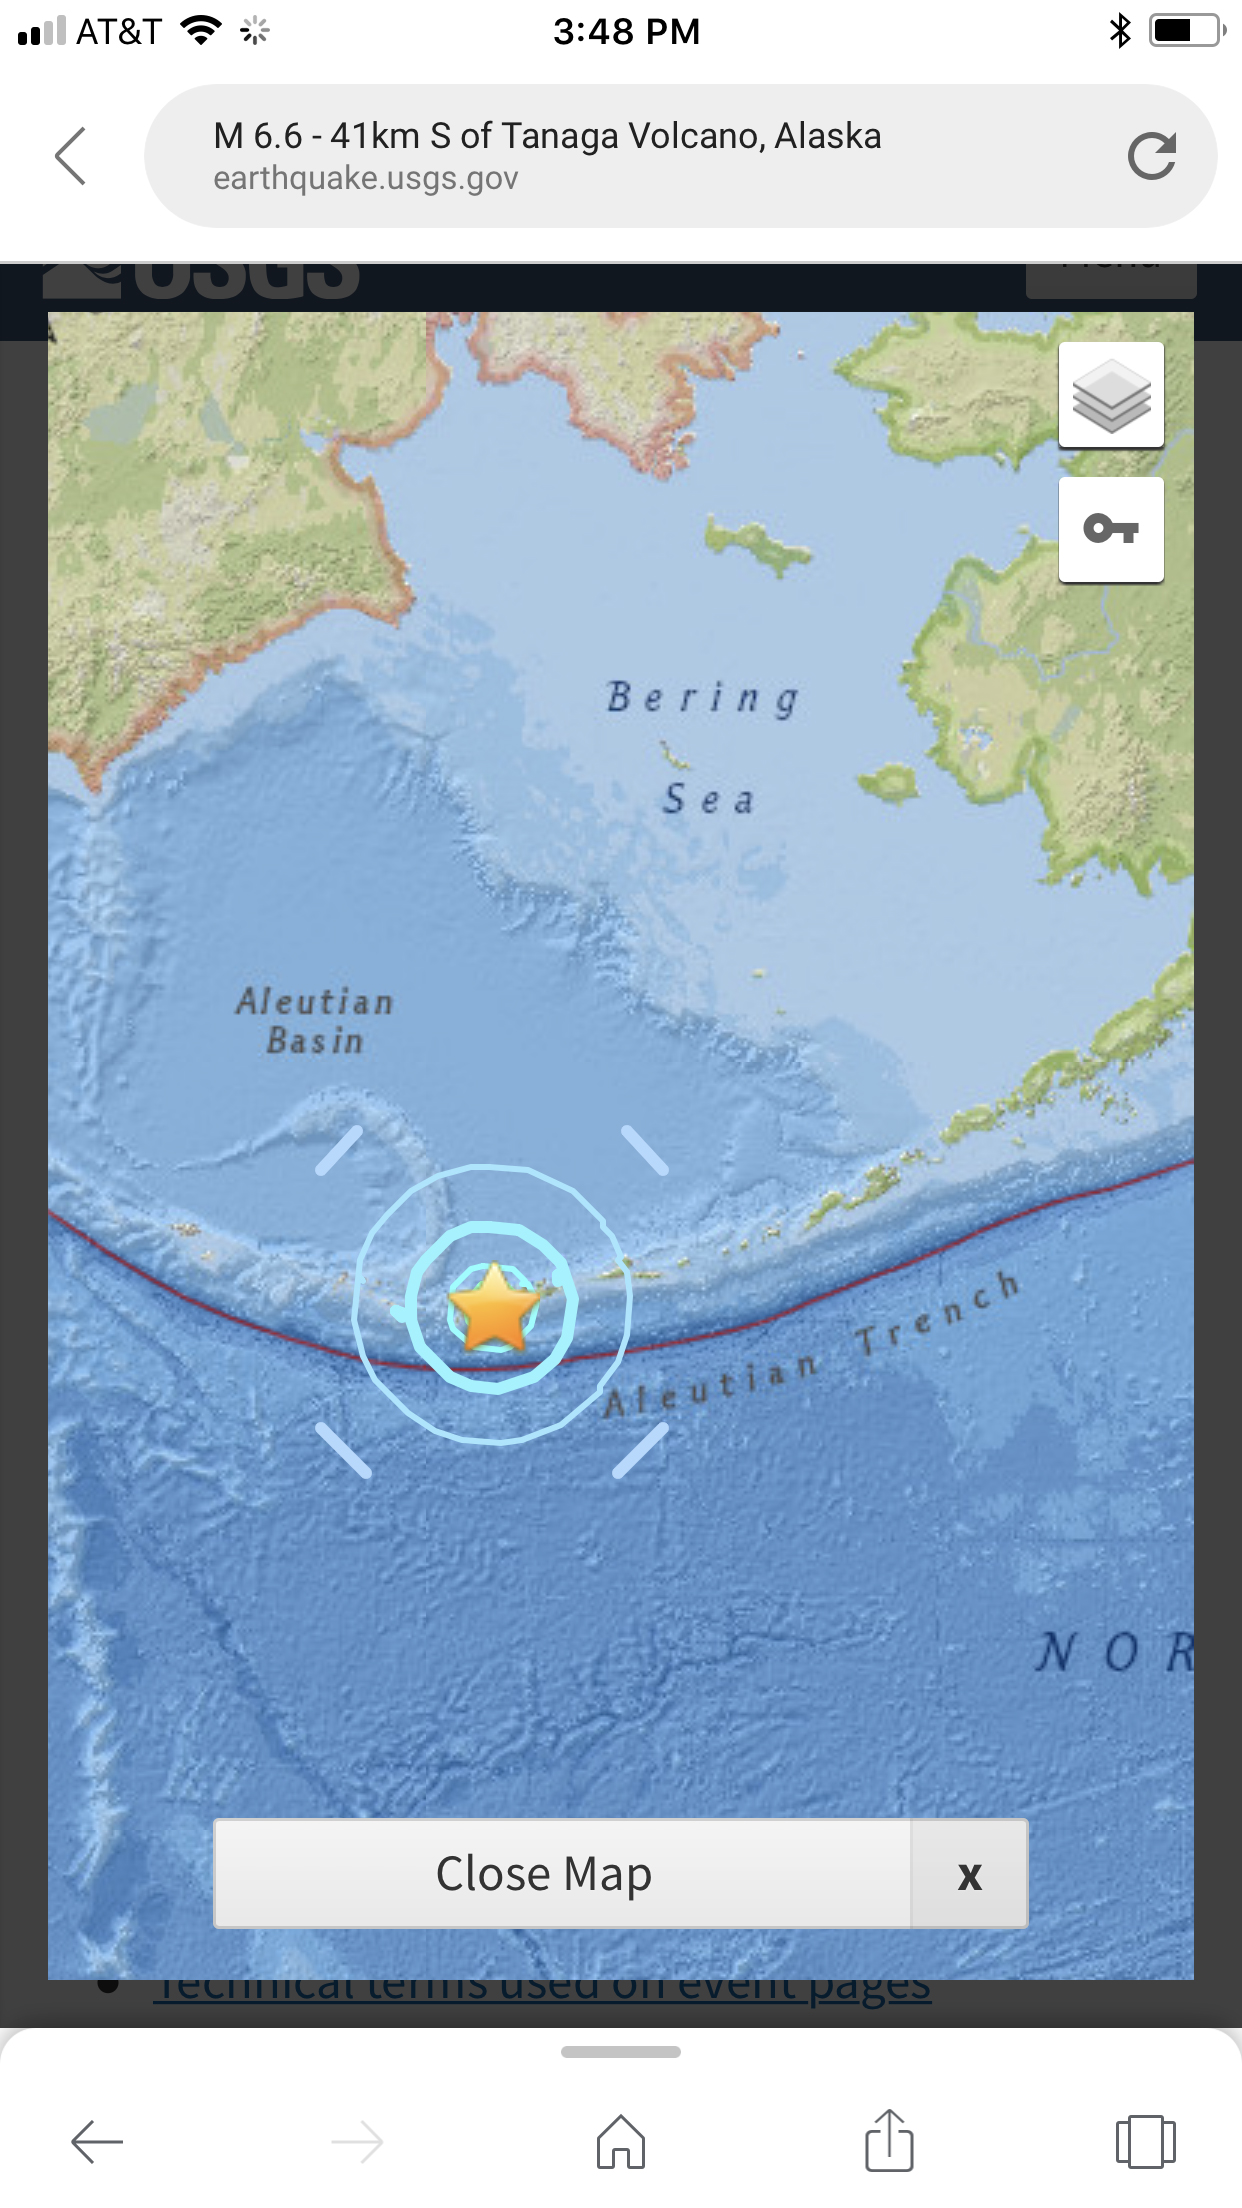 美国阿拉斯加塔纳加火山以南41公里处发生6.6级地震